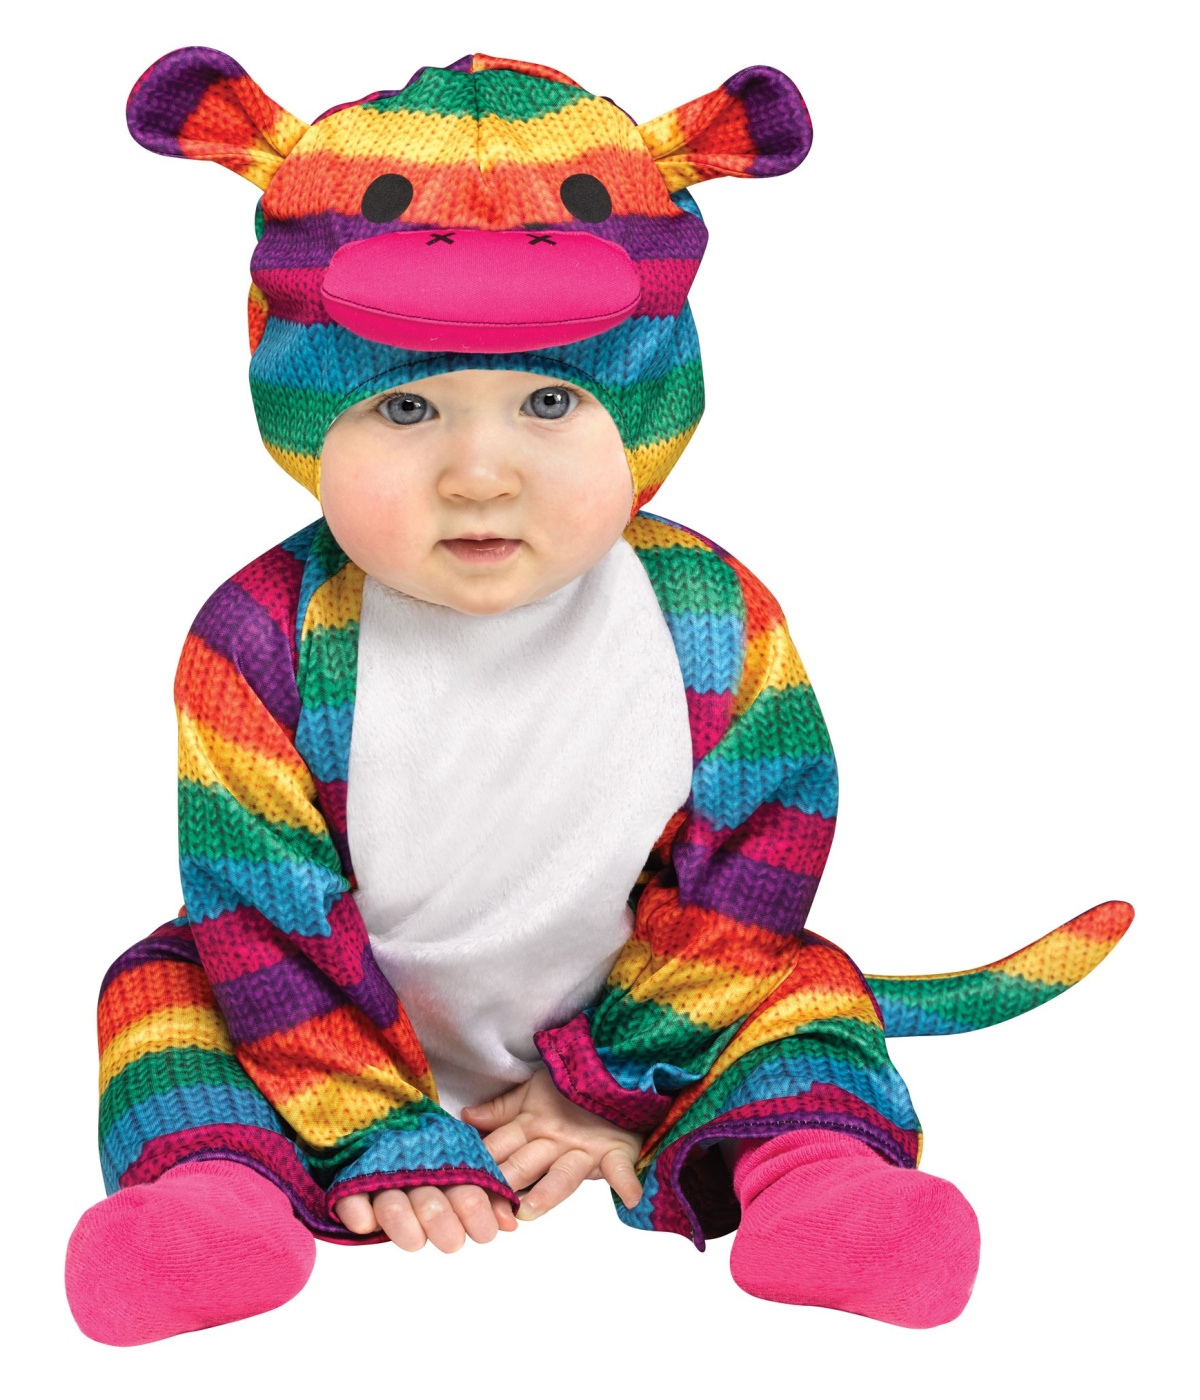  Sock Monkey Baby Costume